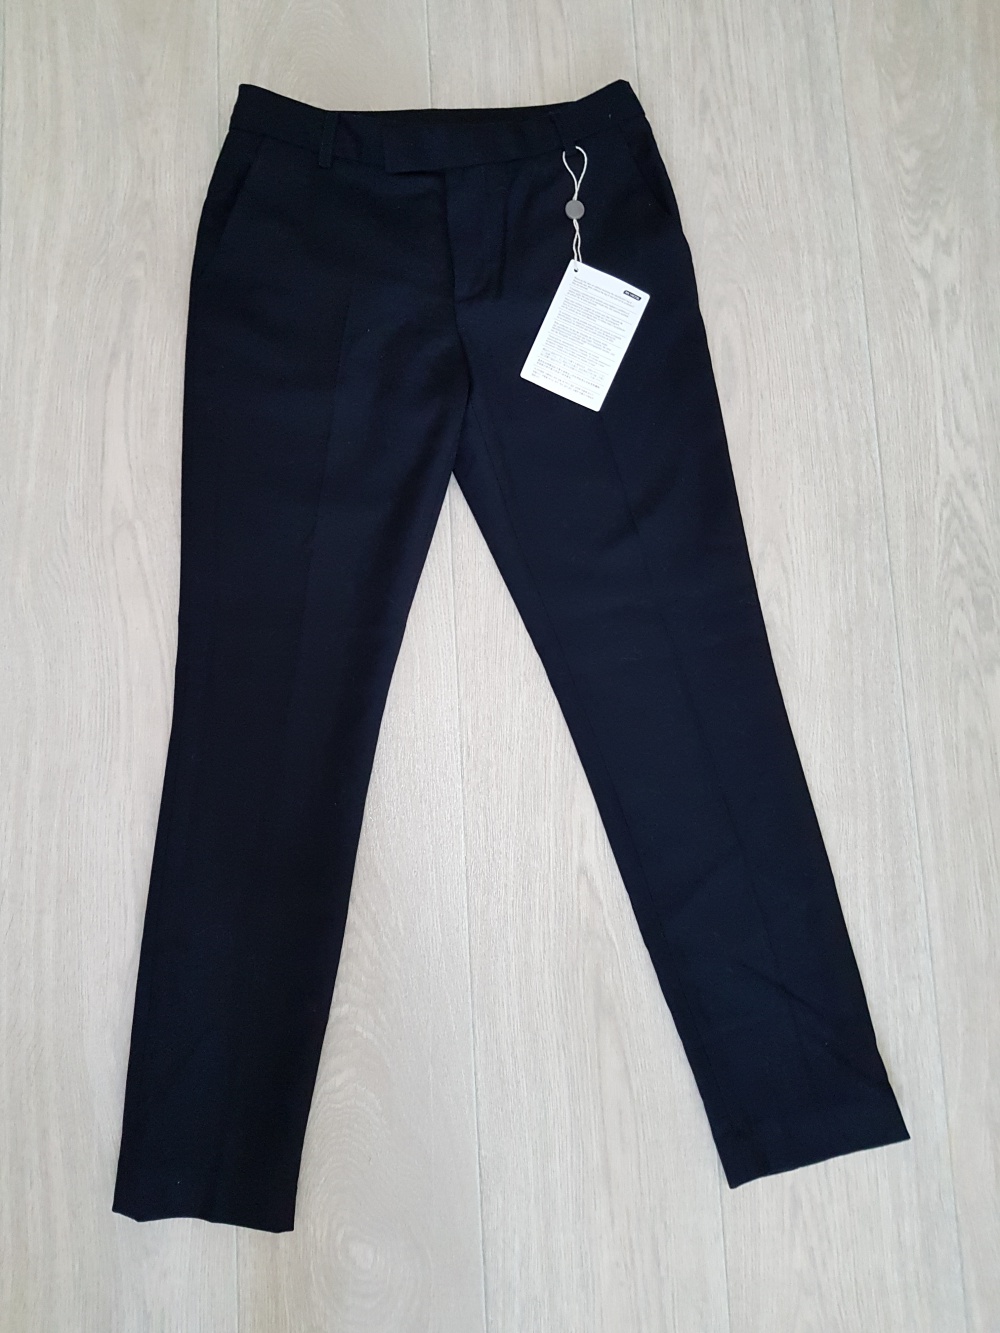 Зауженные шерстяные брюки Marc by Marc Jacobs, размер 4 US (42-44 рус)